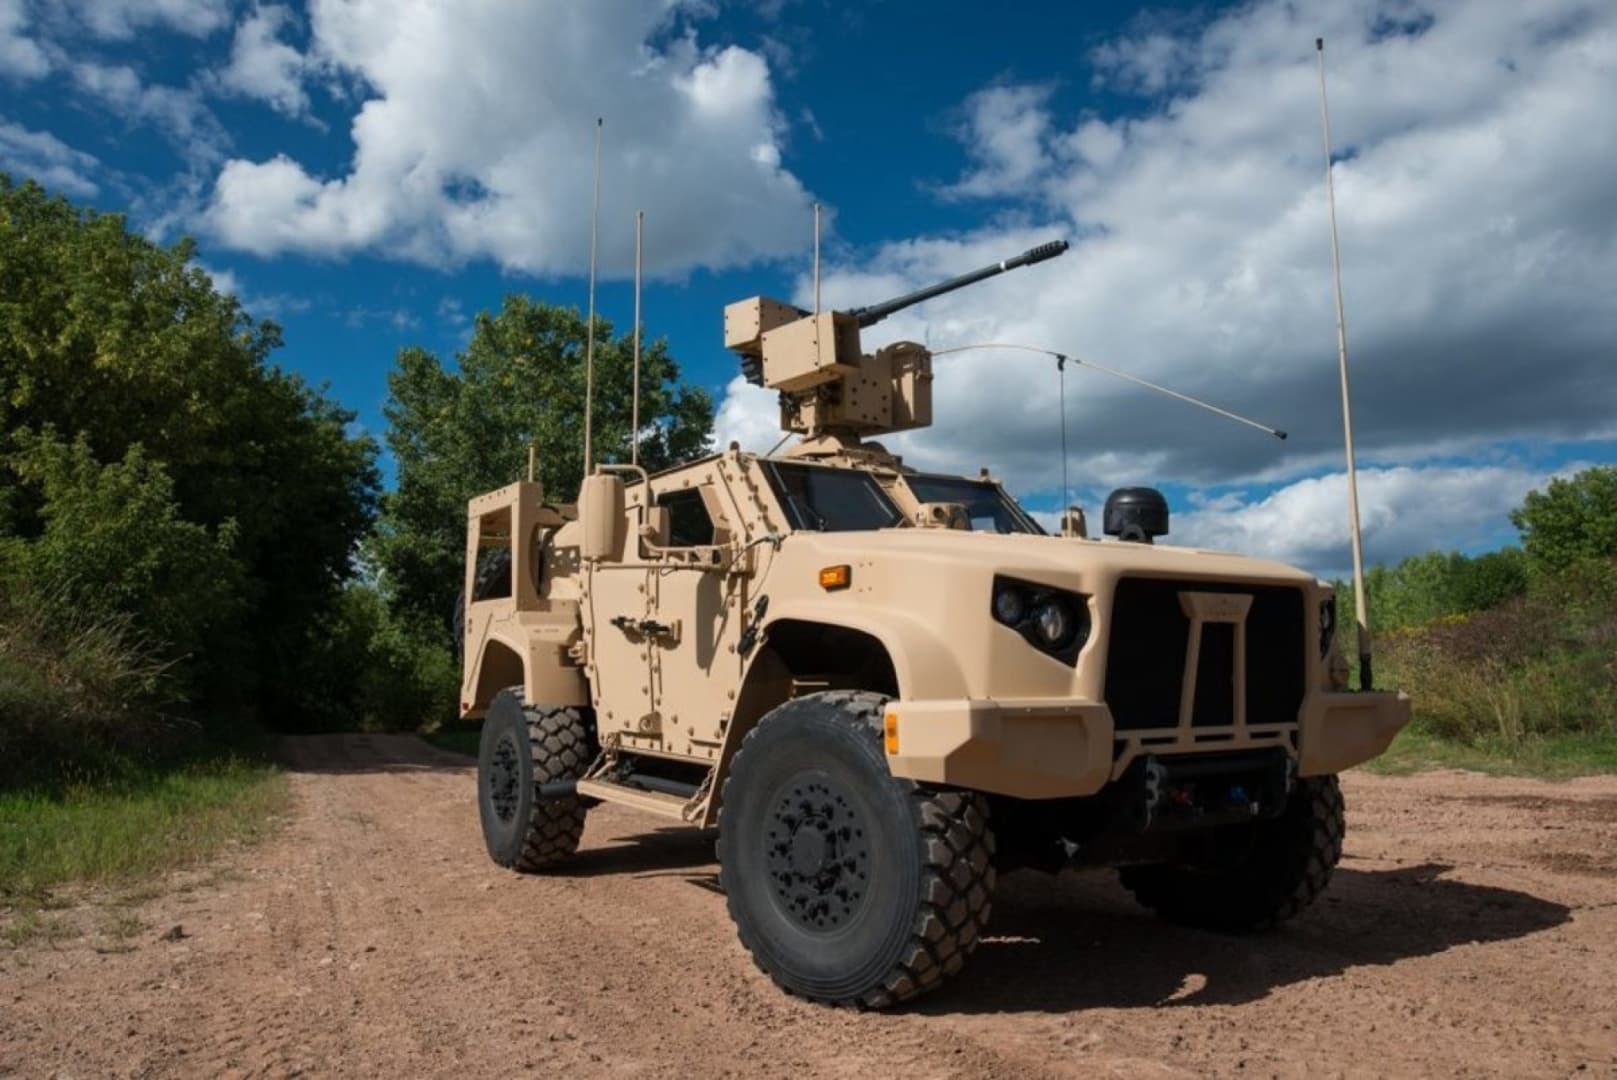 A védelmi minisztérium elfogadta az amerikaiak ajánlatát, majdnem 200 millióért érkeznek taktikai járművek